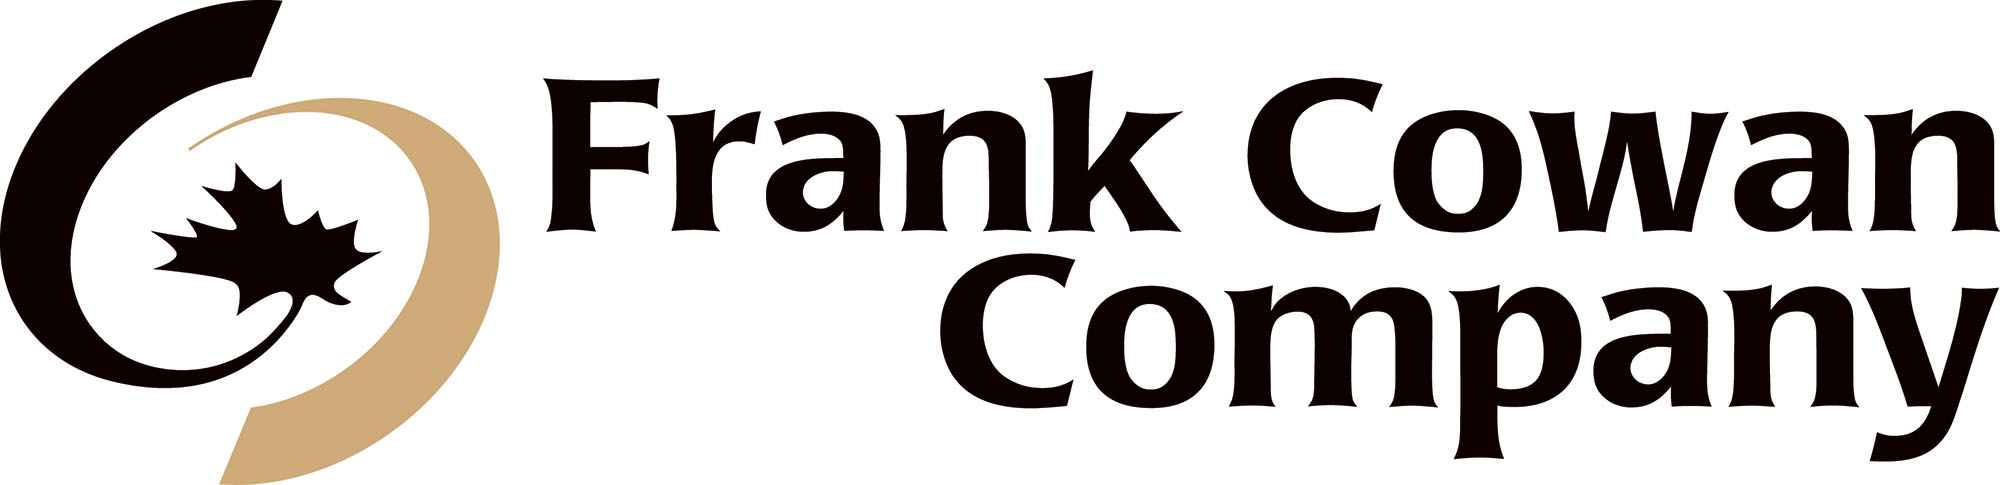 Frank Cowan Company Logo 